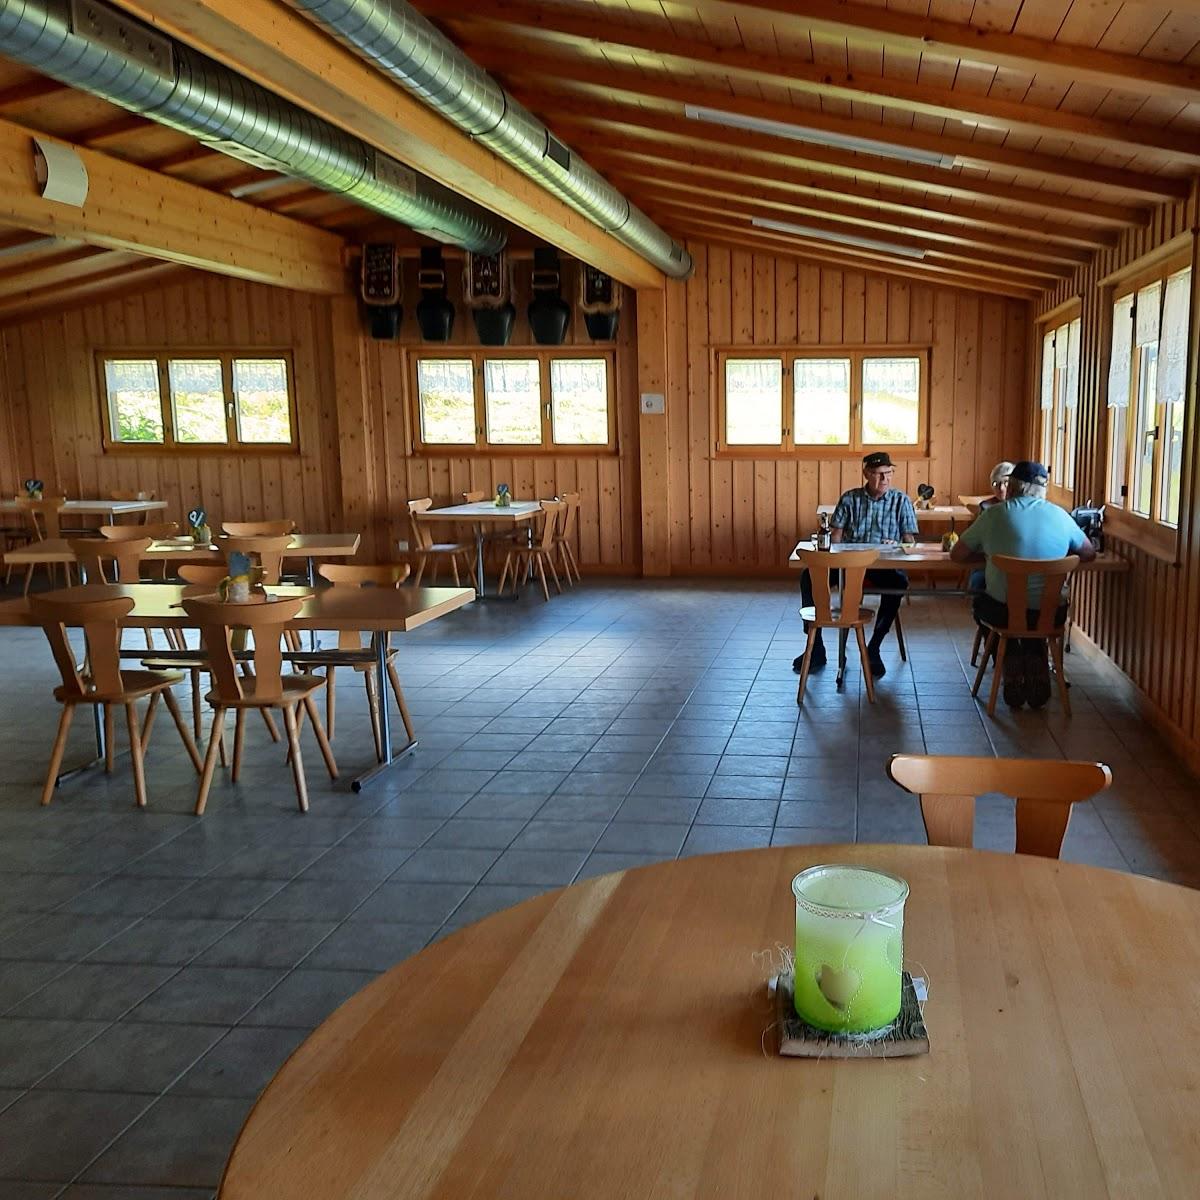 Restaurant "Neuhütten" in Hasle